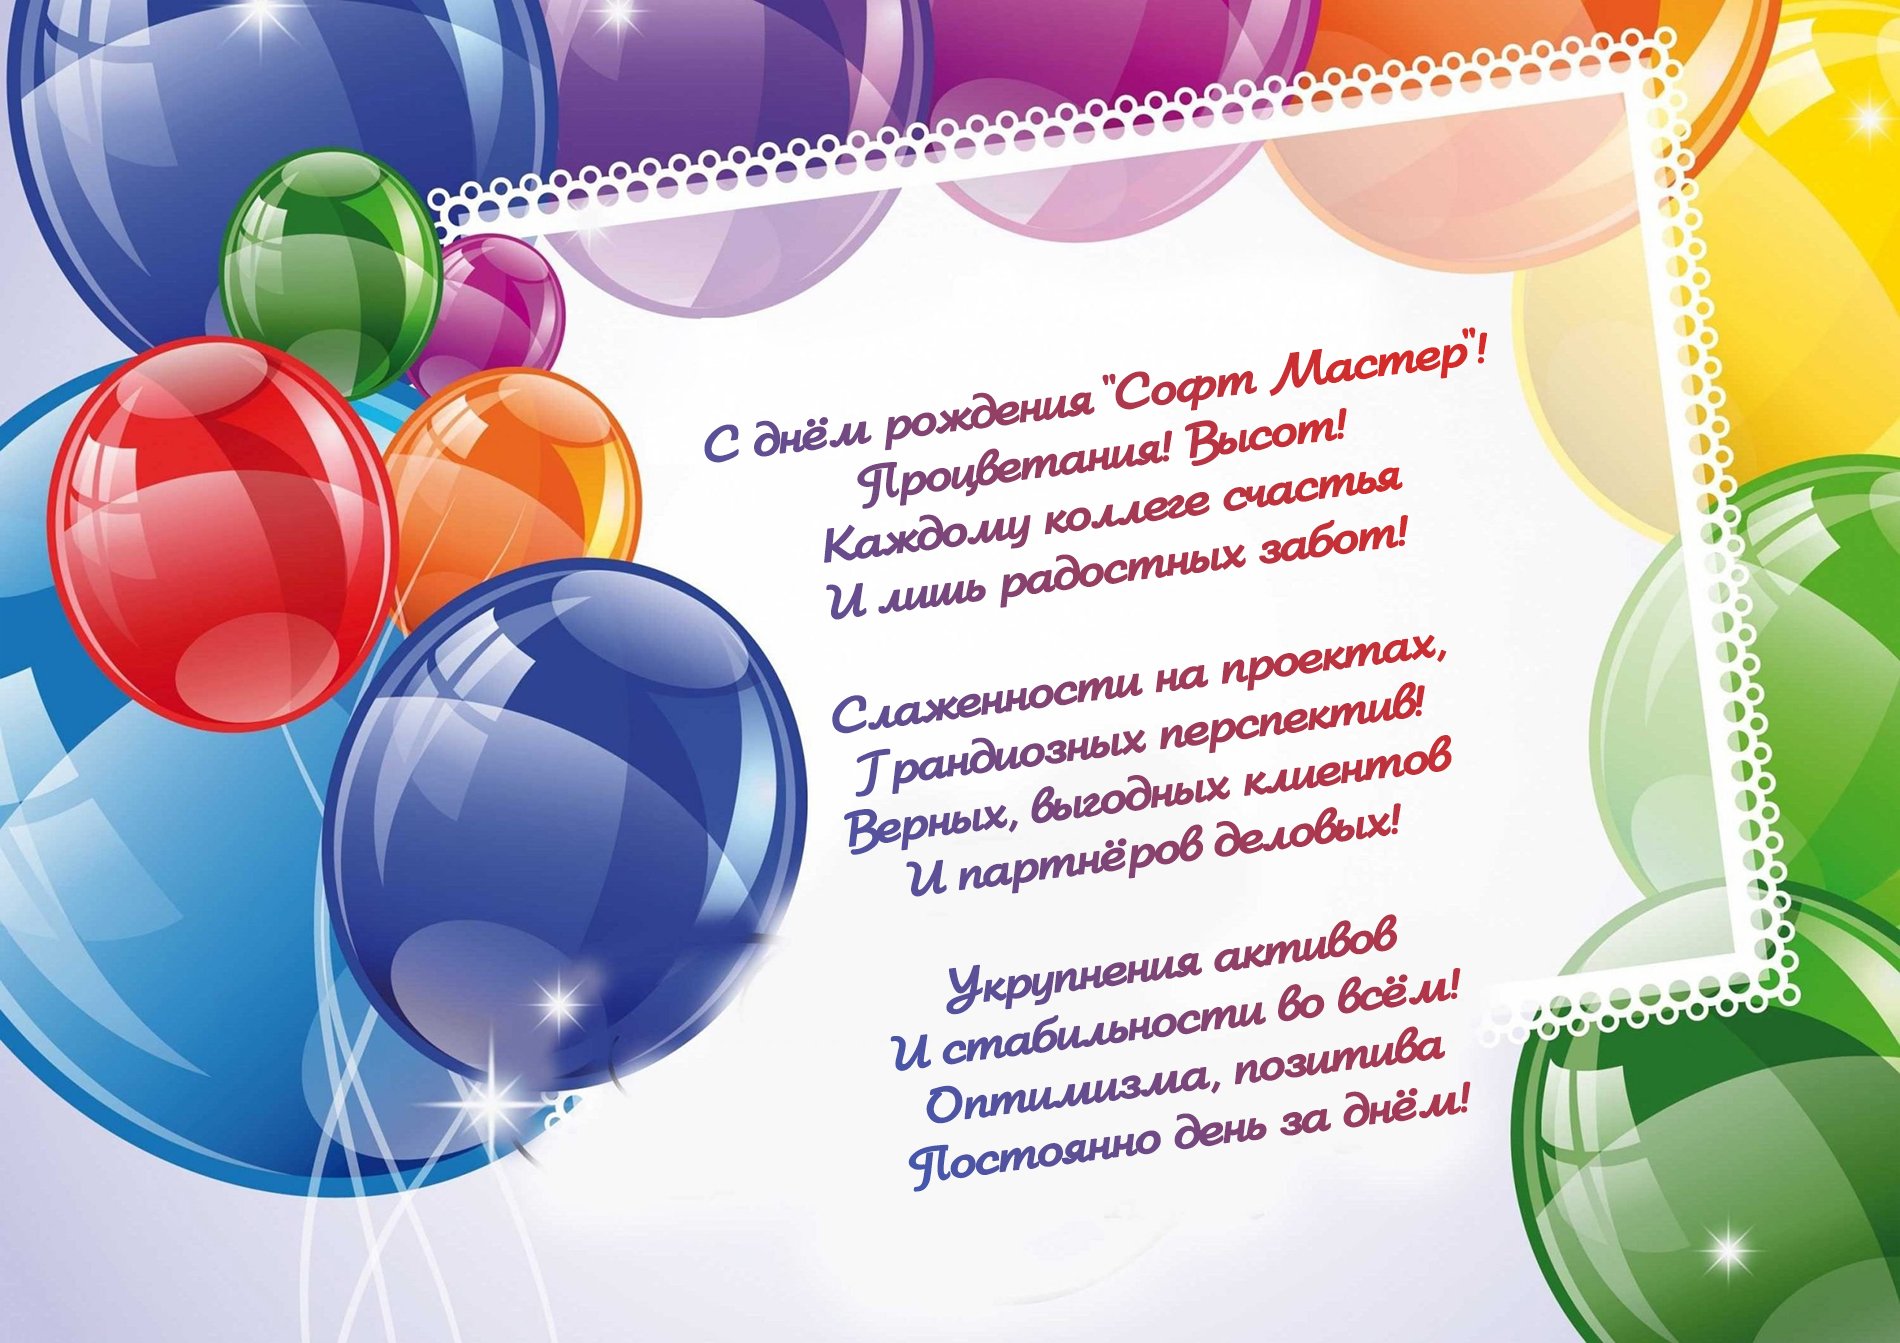 дмитрий с днем рождения открытки с поздравлениями - 9035443